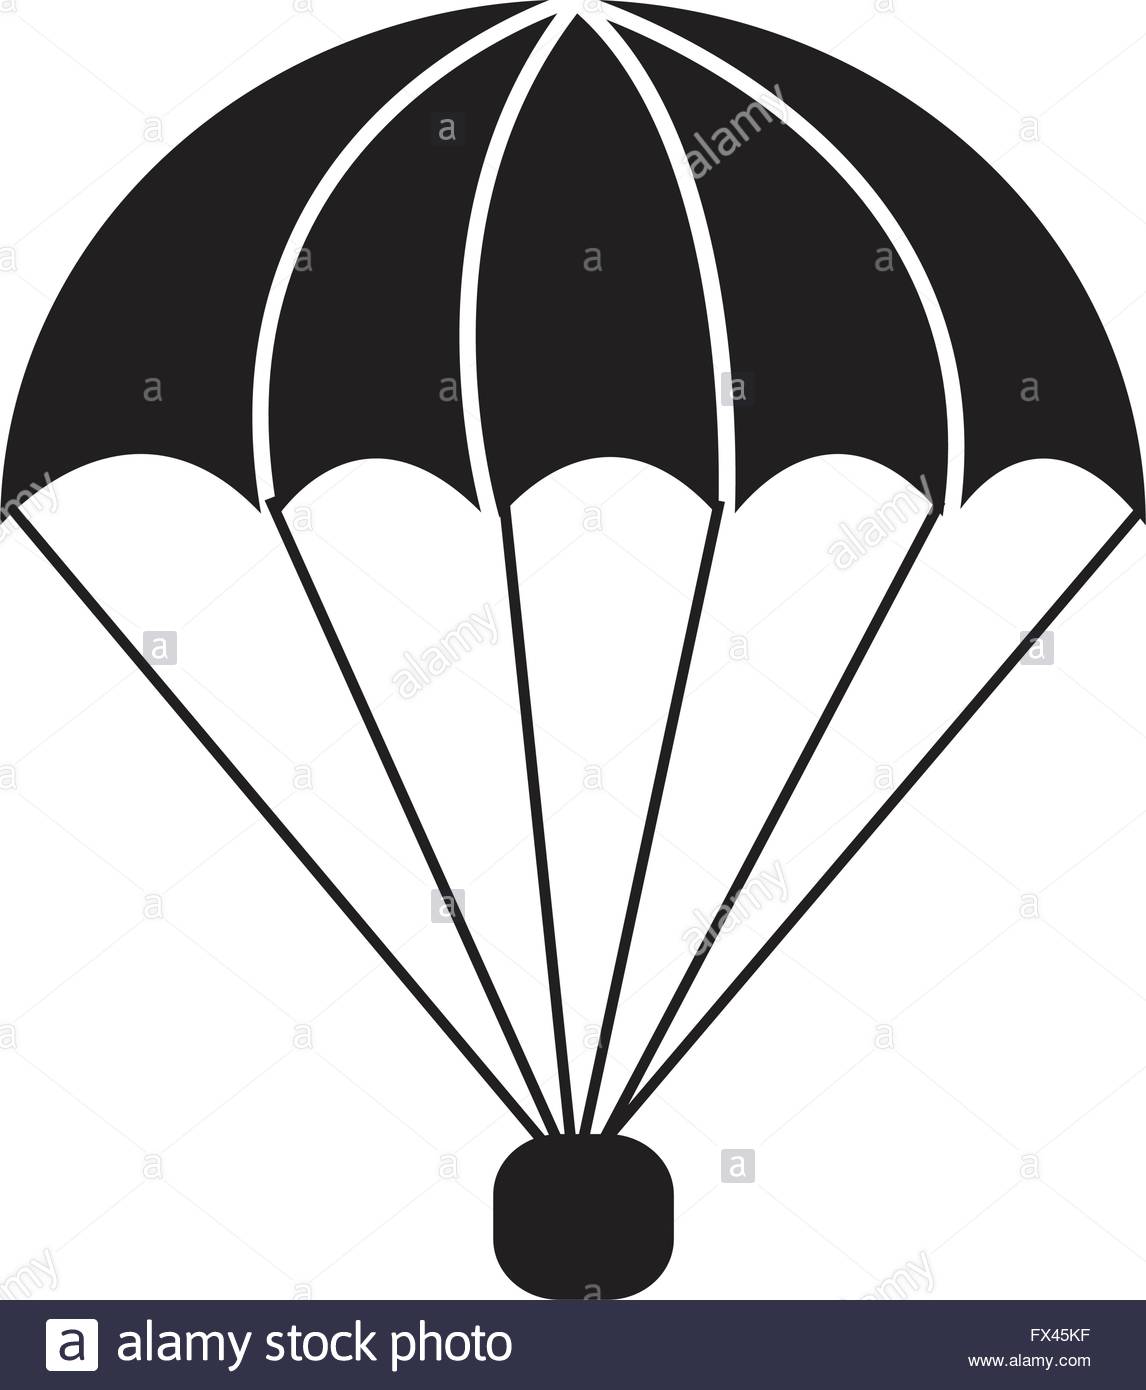 Parachute icons | Noun Project